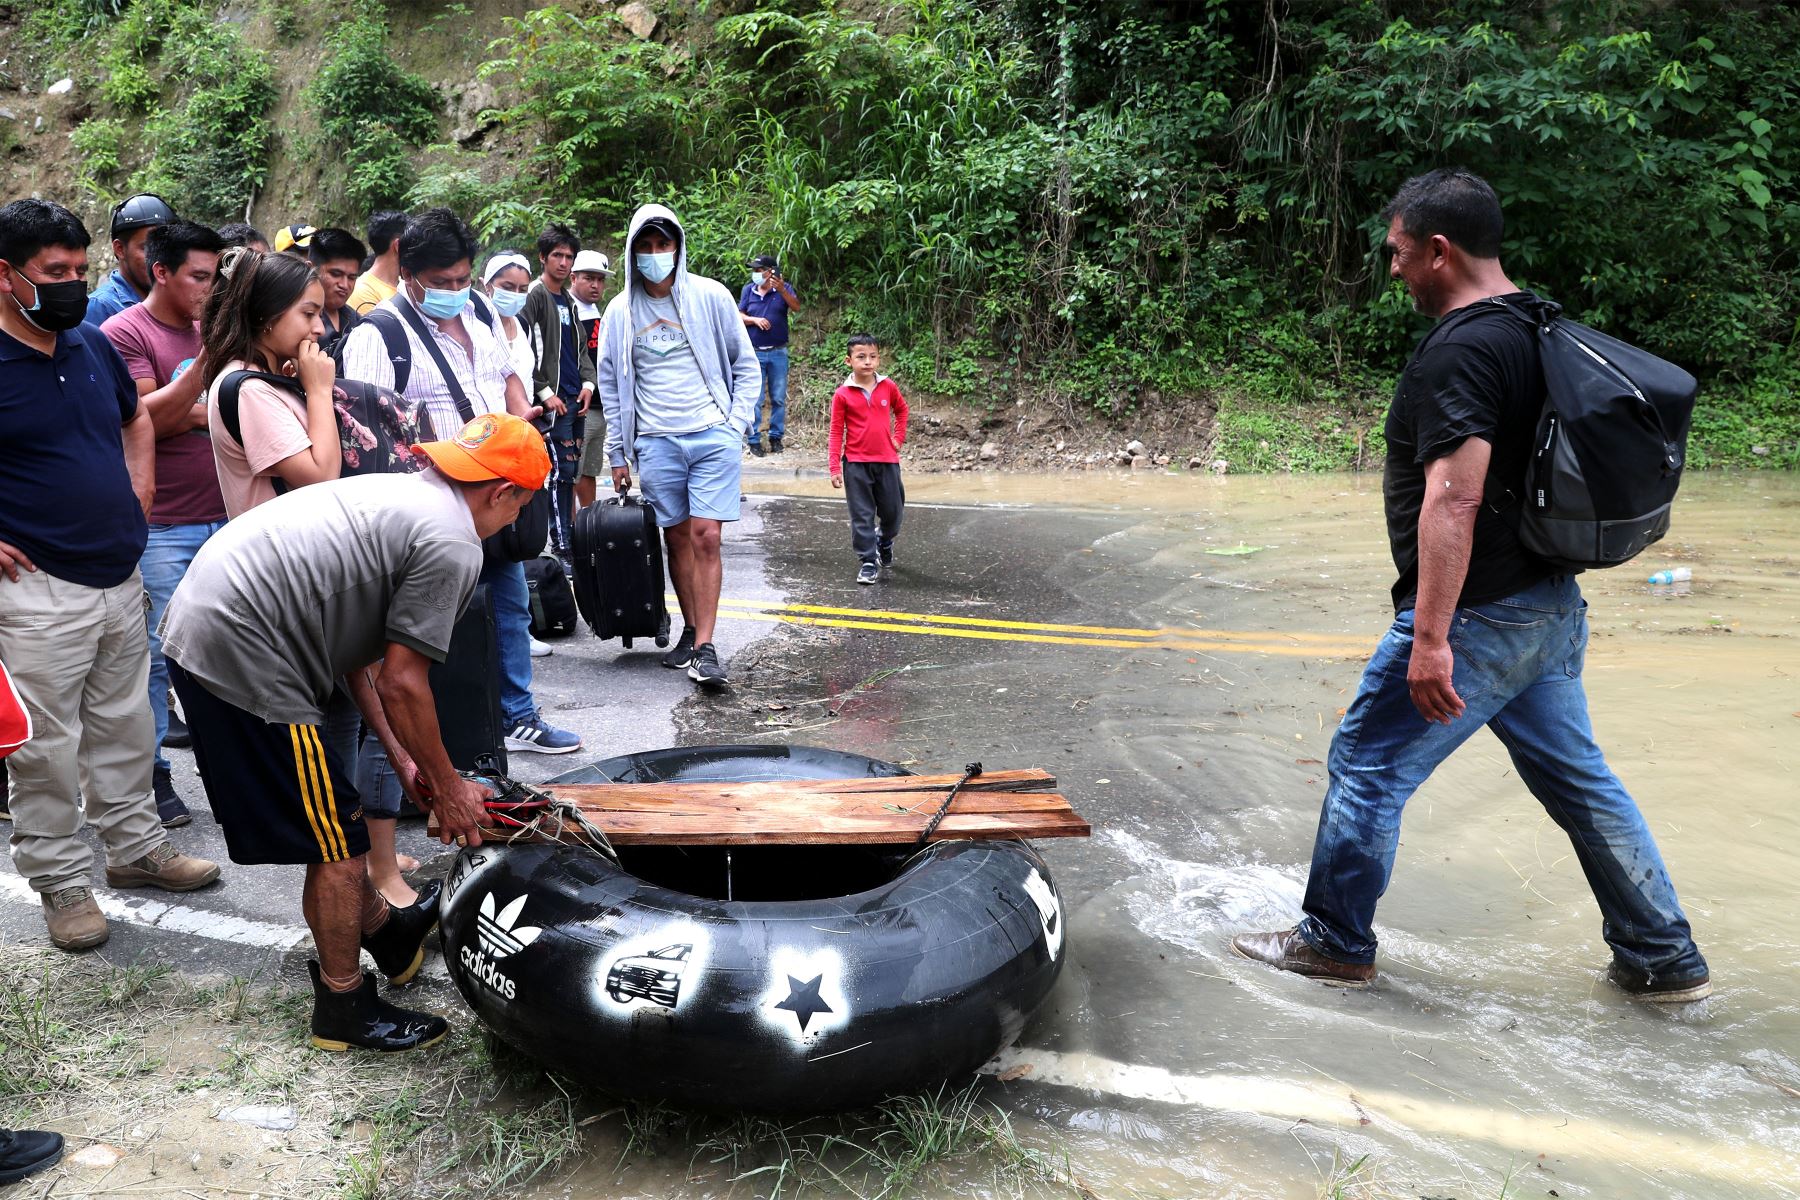 Cierran carretera entre Bagua Grande y Pedro Ruiz por seguridad. Tramo en el sector Aserradero, entre el km 263 y el km 275 de Amazonas, sufrió derrumbes que han provocado que el agua del río Utcubamba se embalse e inunde la pista.
Foto: MTC